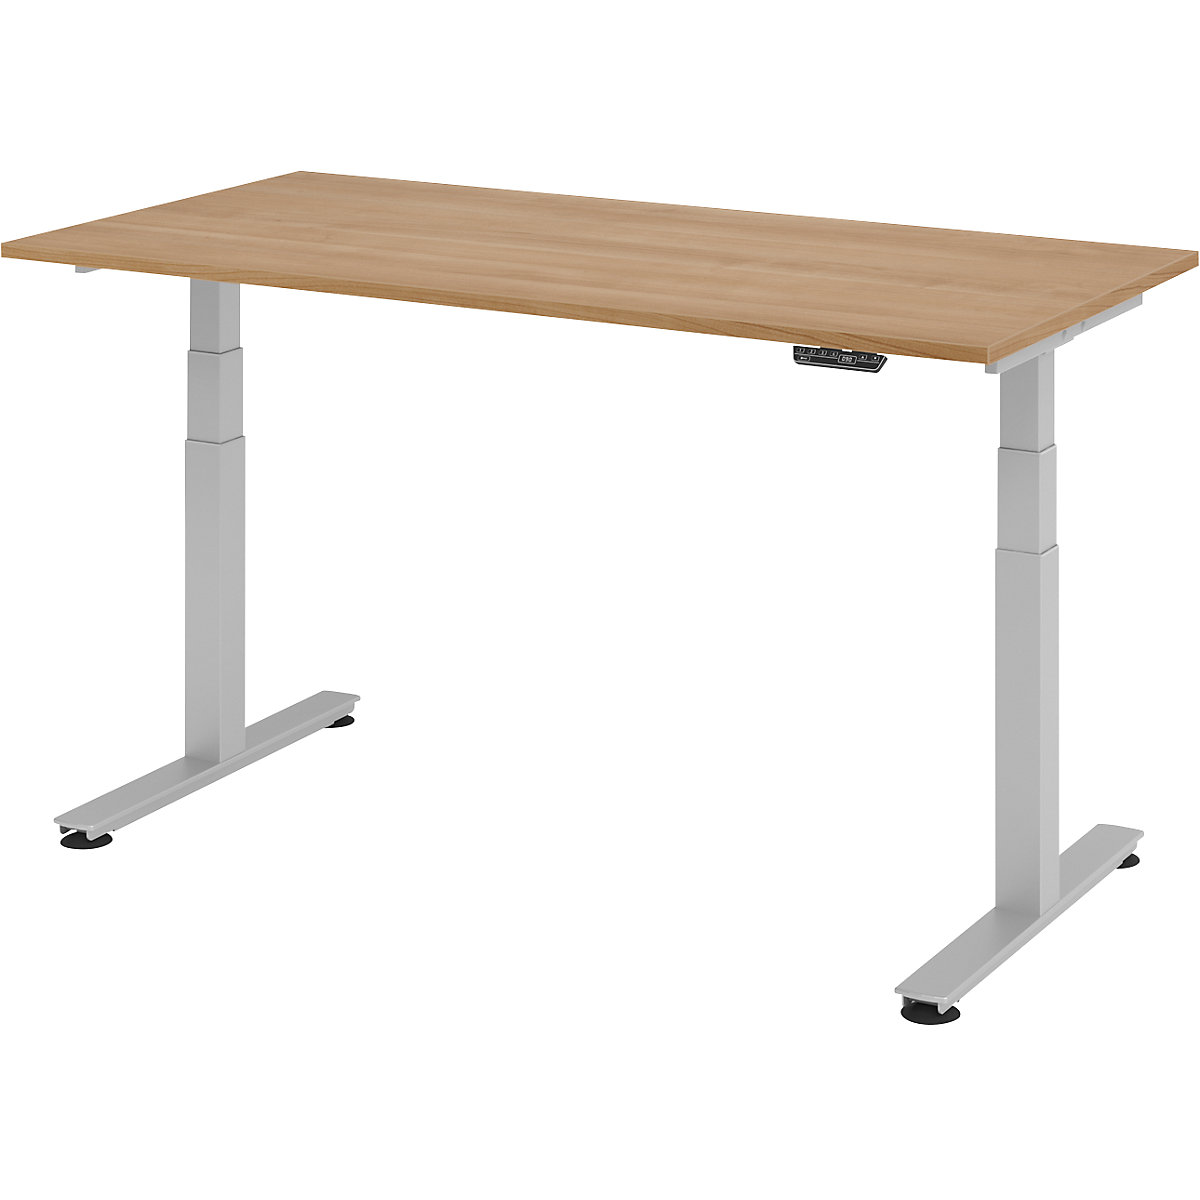 Stôl na písanie v stoji, elektricky výškovo prestaviteľný UPLINER-2.0, podstavec s nohou v tvare T, šírka 1200 mm, vzor orech-22